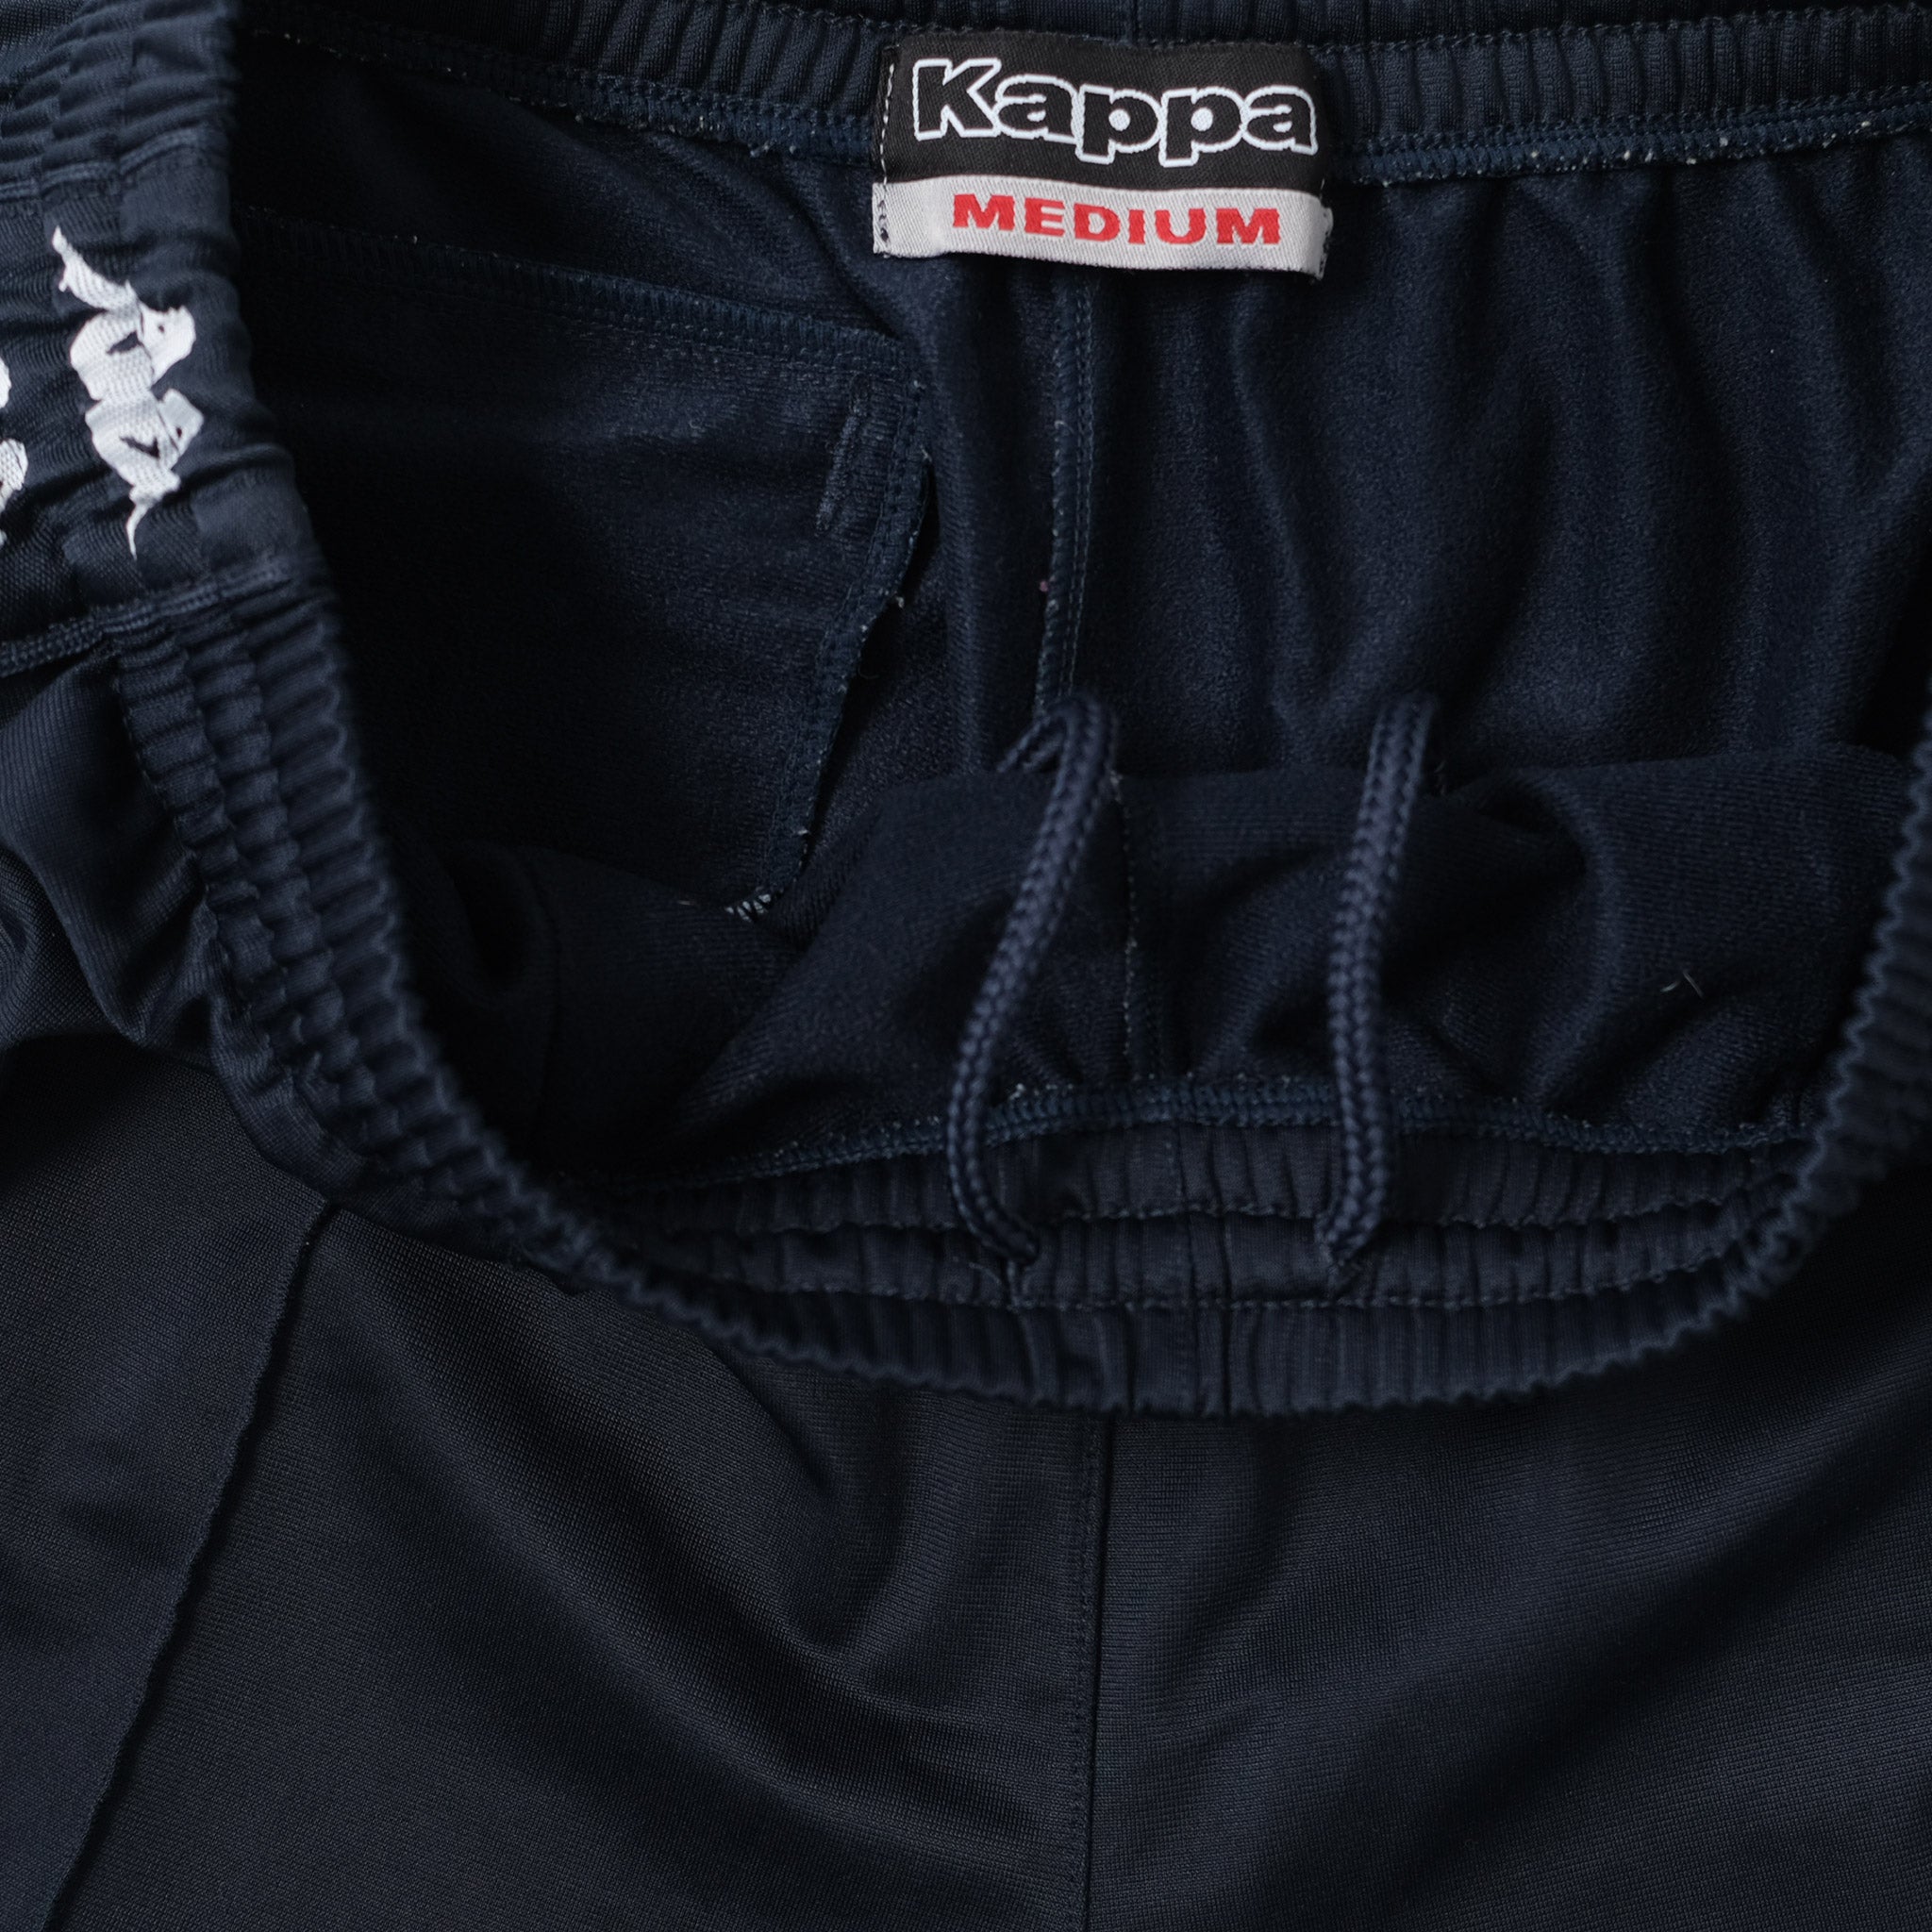 Kappa Track Pants - Buy Kappa Track Pants online in India